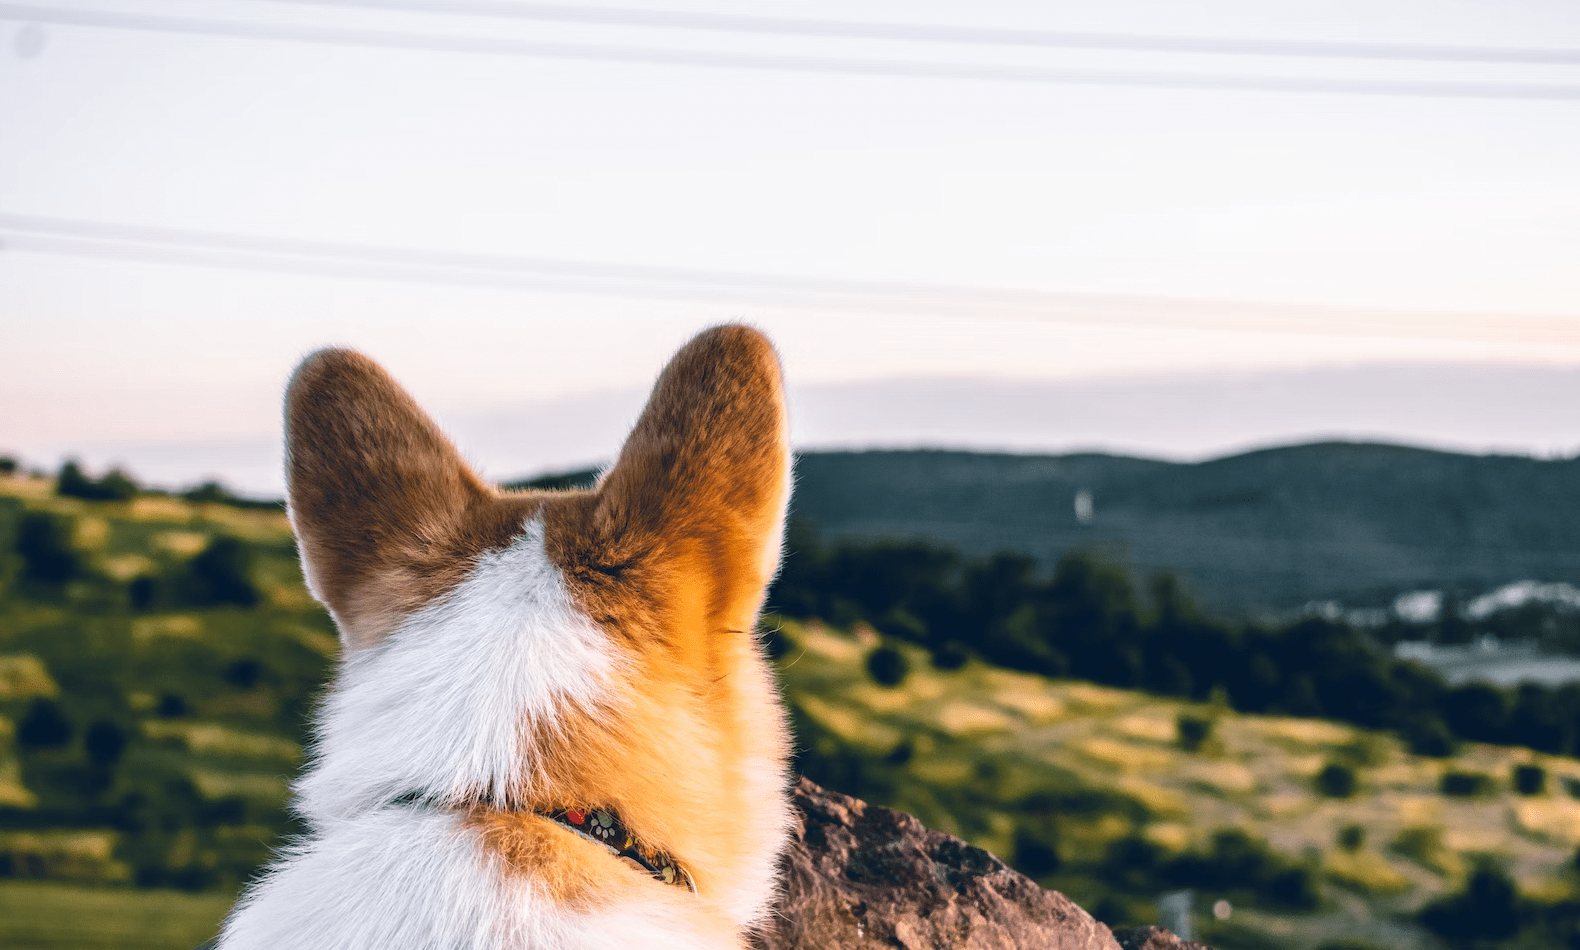 Comment nettoyer les oreilles du chien